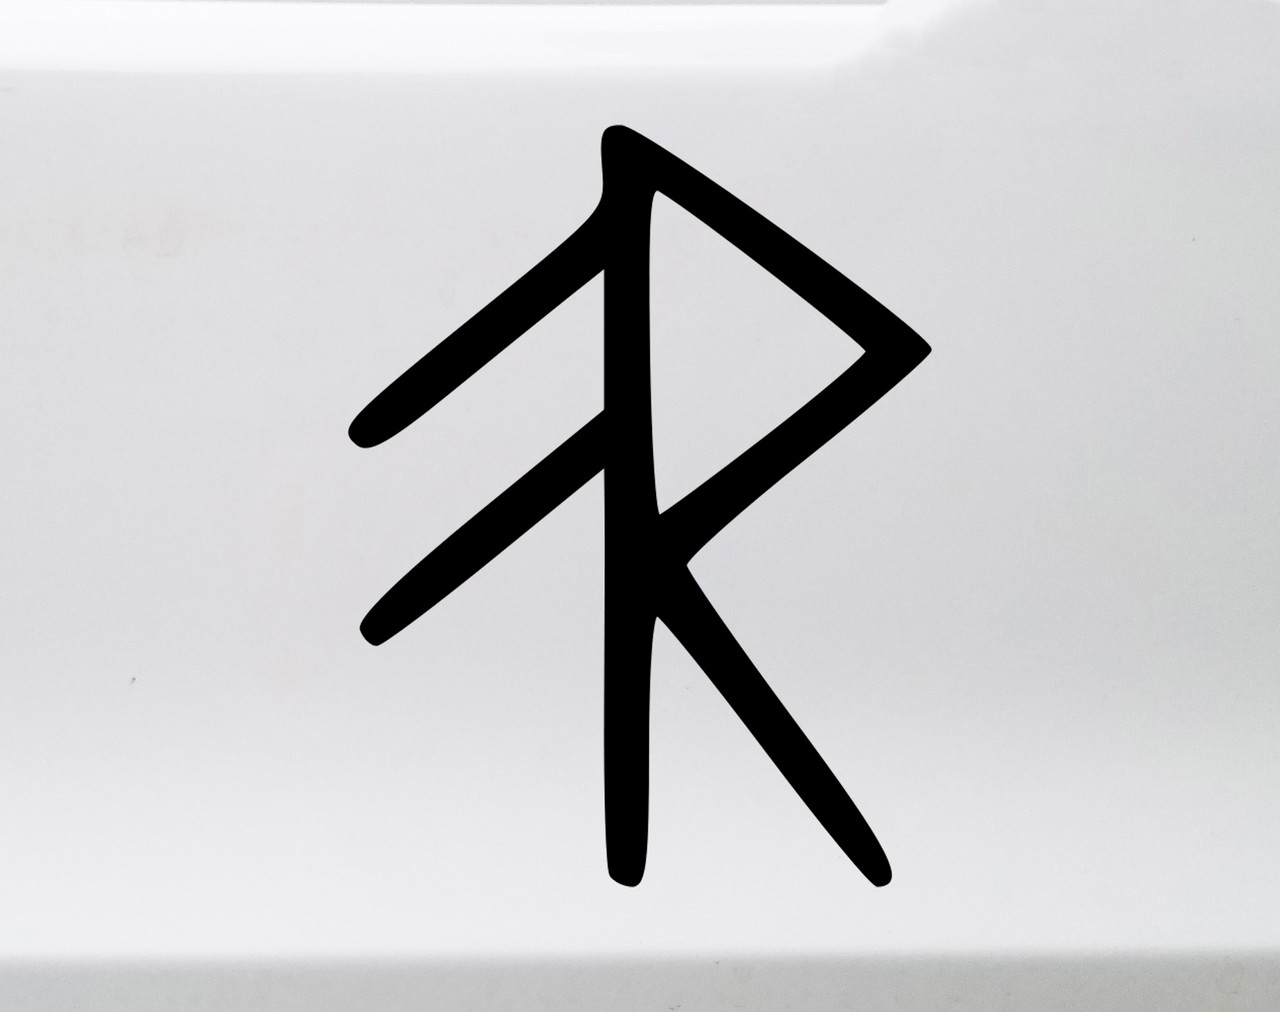 Energy Bind Rune Vinyl Decal - Viking Symbol Bindrune - Die Cut Sticker
